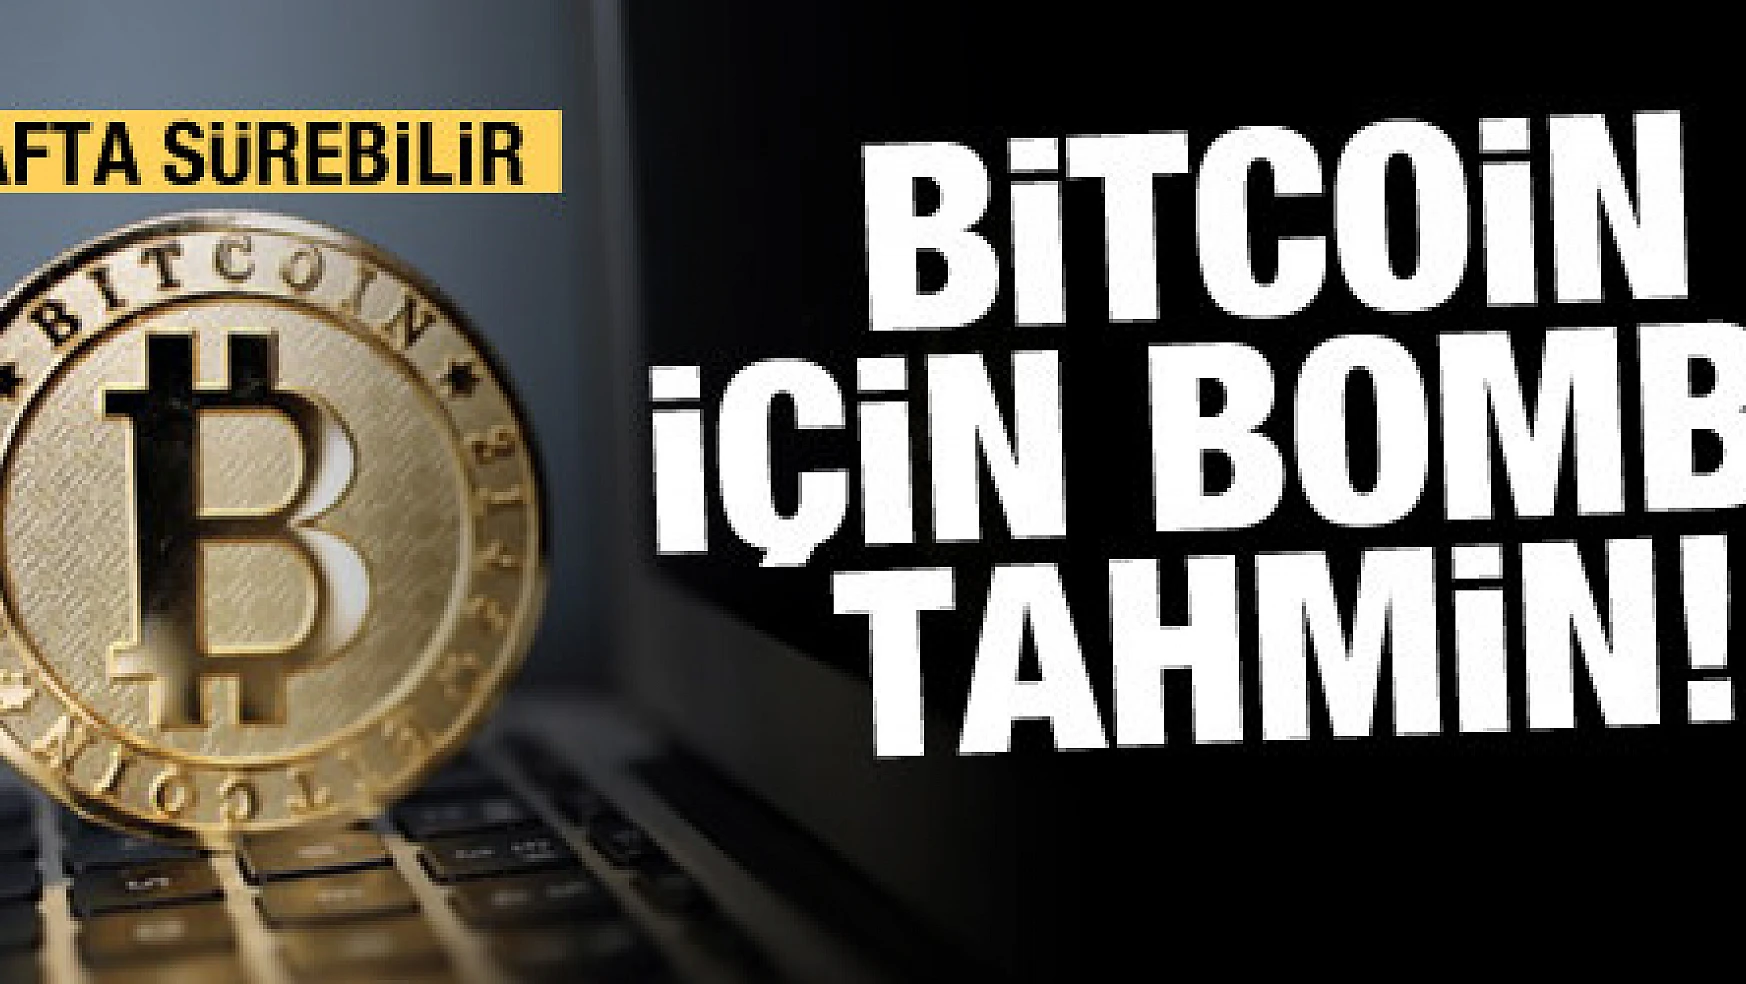 Bitcoin için bomba tahmin: 4-6 hafta sürebilir!